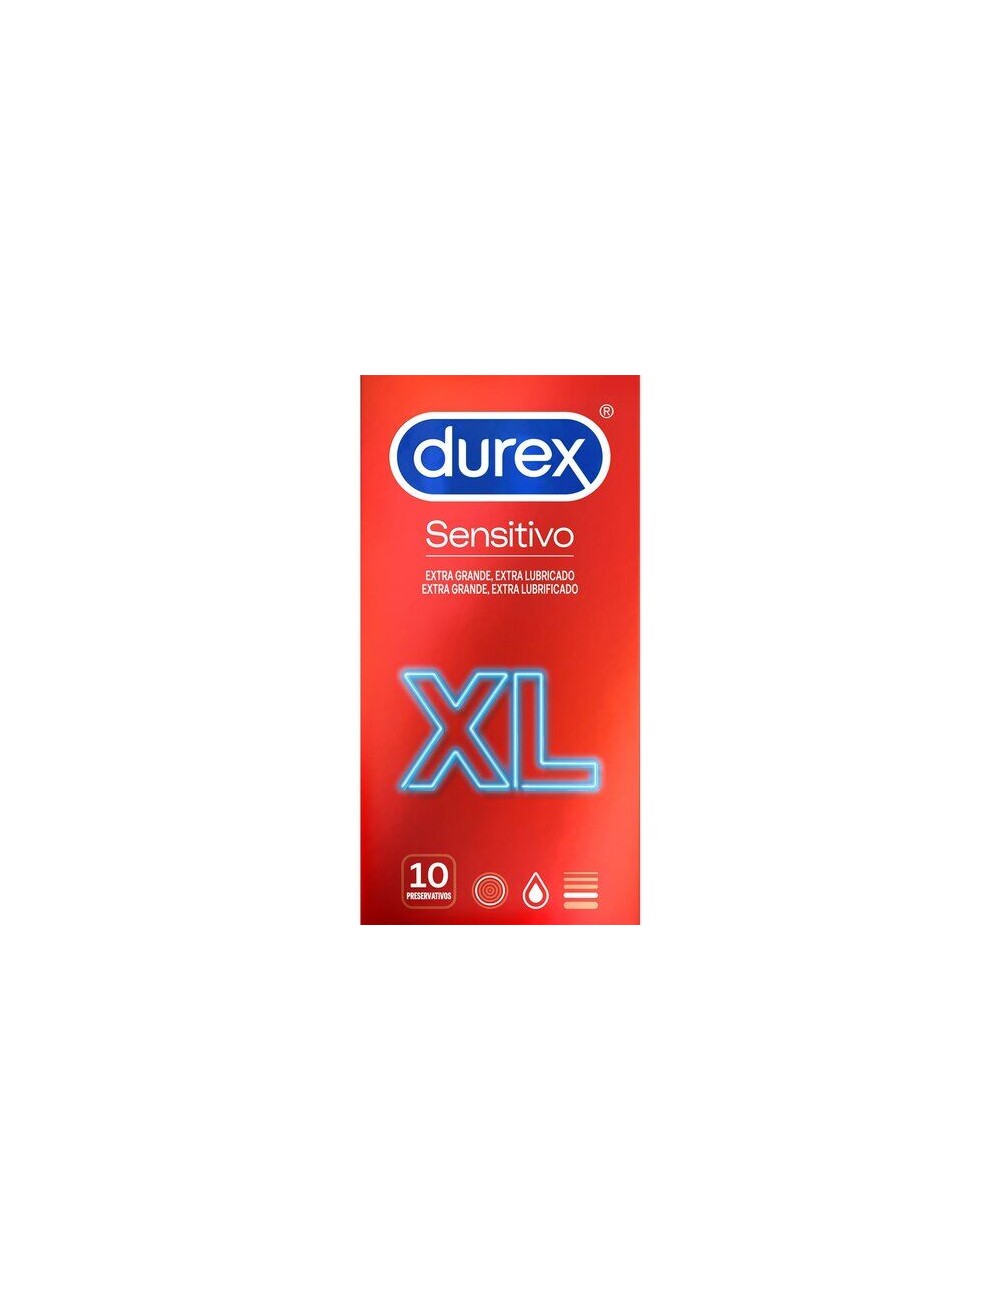 DUREX SENSITIVE XL CONDOMS 10 UNITS